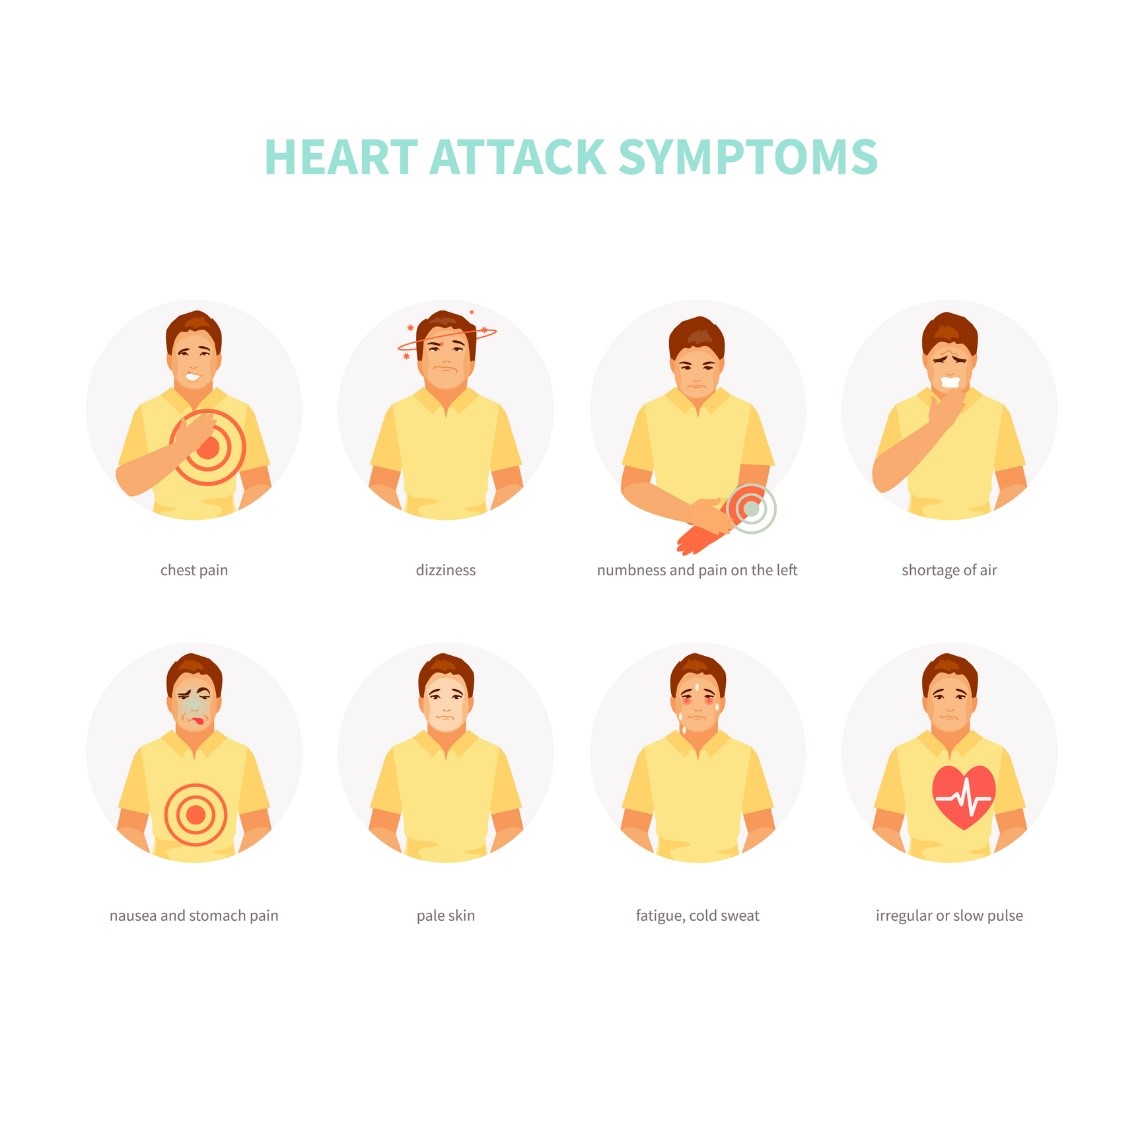 Symptómy srdcového infarktu (infarkt myokardu): Bolesť hrudníka, zmätenosť, bolesť vyžarujúca do ľavej paže, pocit nedostatku vzduchu, nevoľnosť a bolesť žalúdka, bledosť, studený pot, nepravidelný alebo pomalý srdečný tep. 